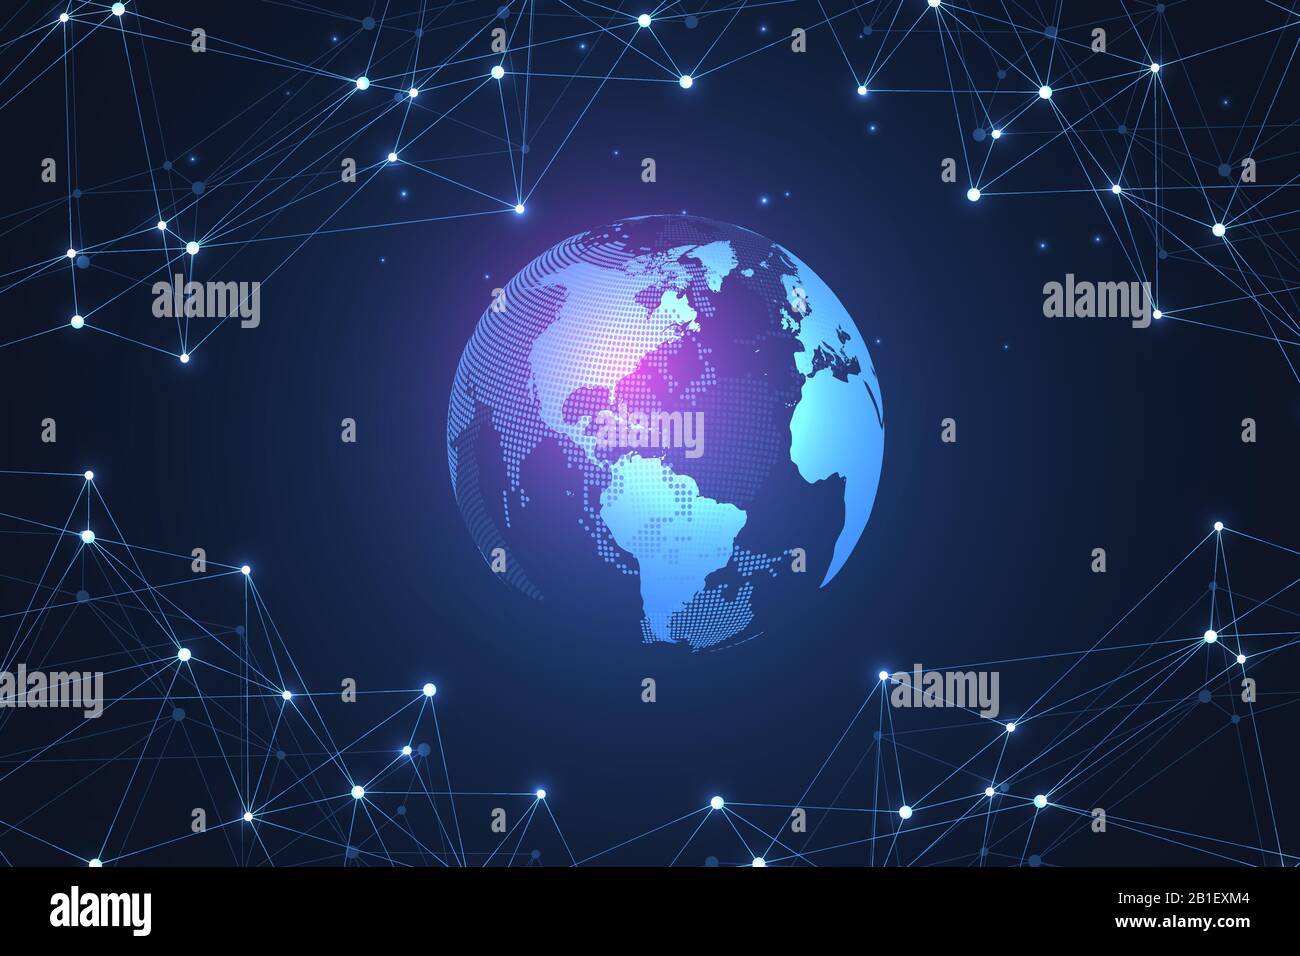 Abstrakte Digitale Netzwerk Verbindung Struktur auf blauem Hintergrund. Künstliche Intelligenz und Technik Konzept. Globales Netzwerk große Datenmengen Stock Vektor